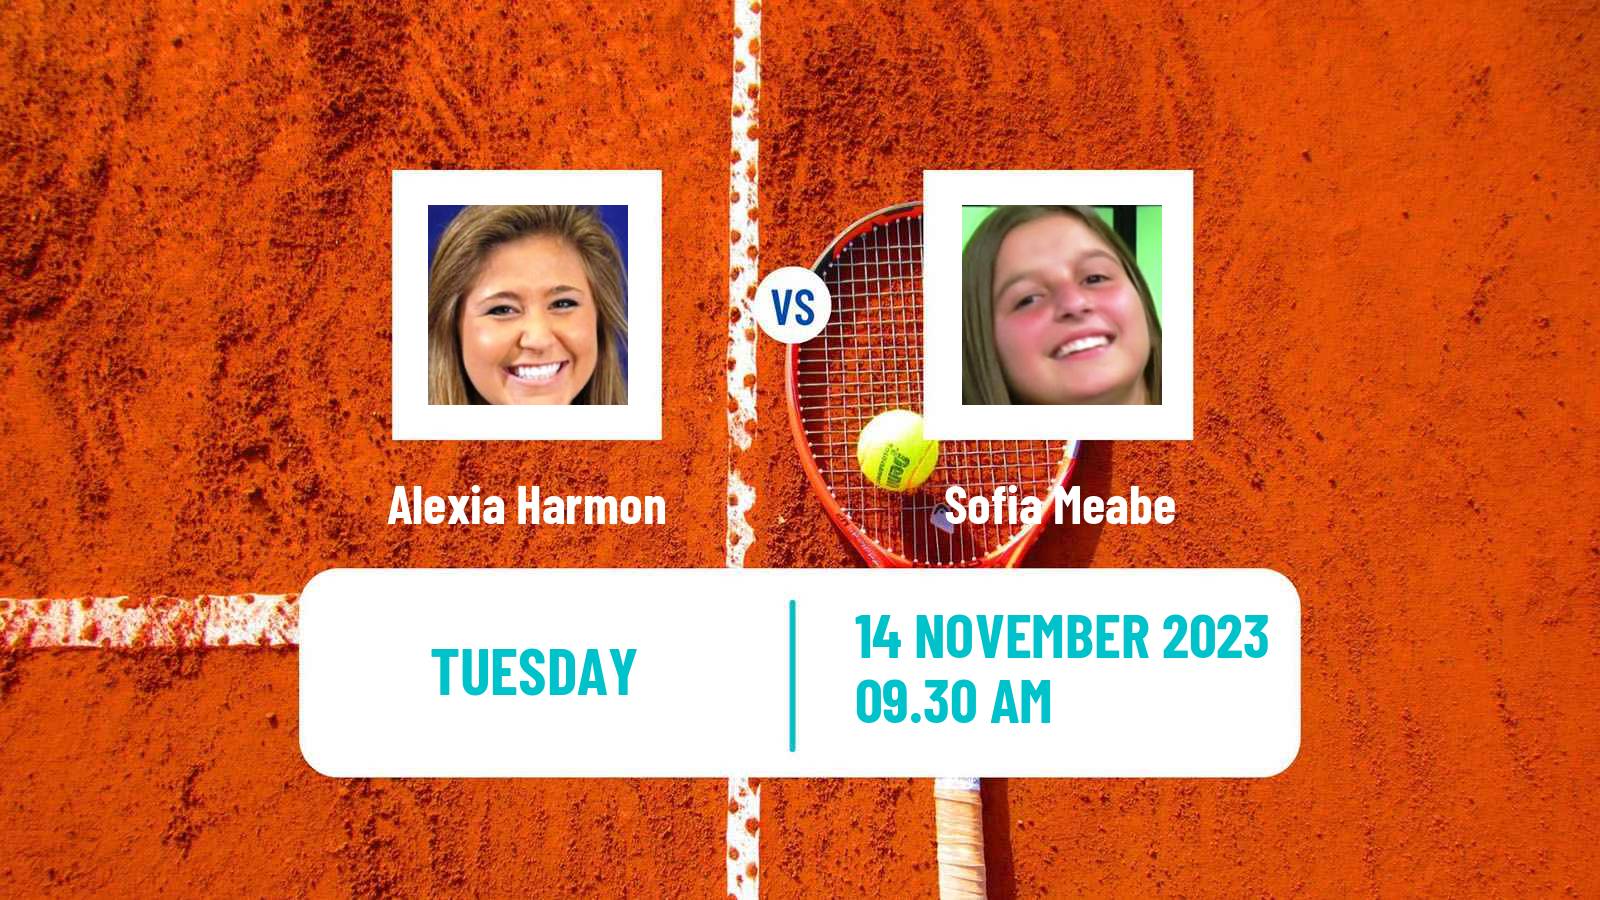 Tennis ITF W15 Buenos Aires 2 Women Alexia Harmon - Sofia Meabe